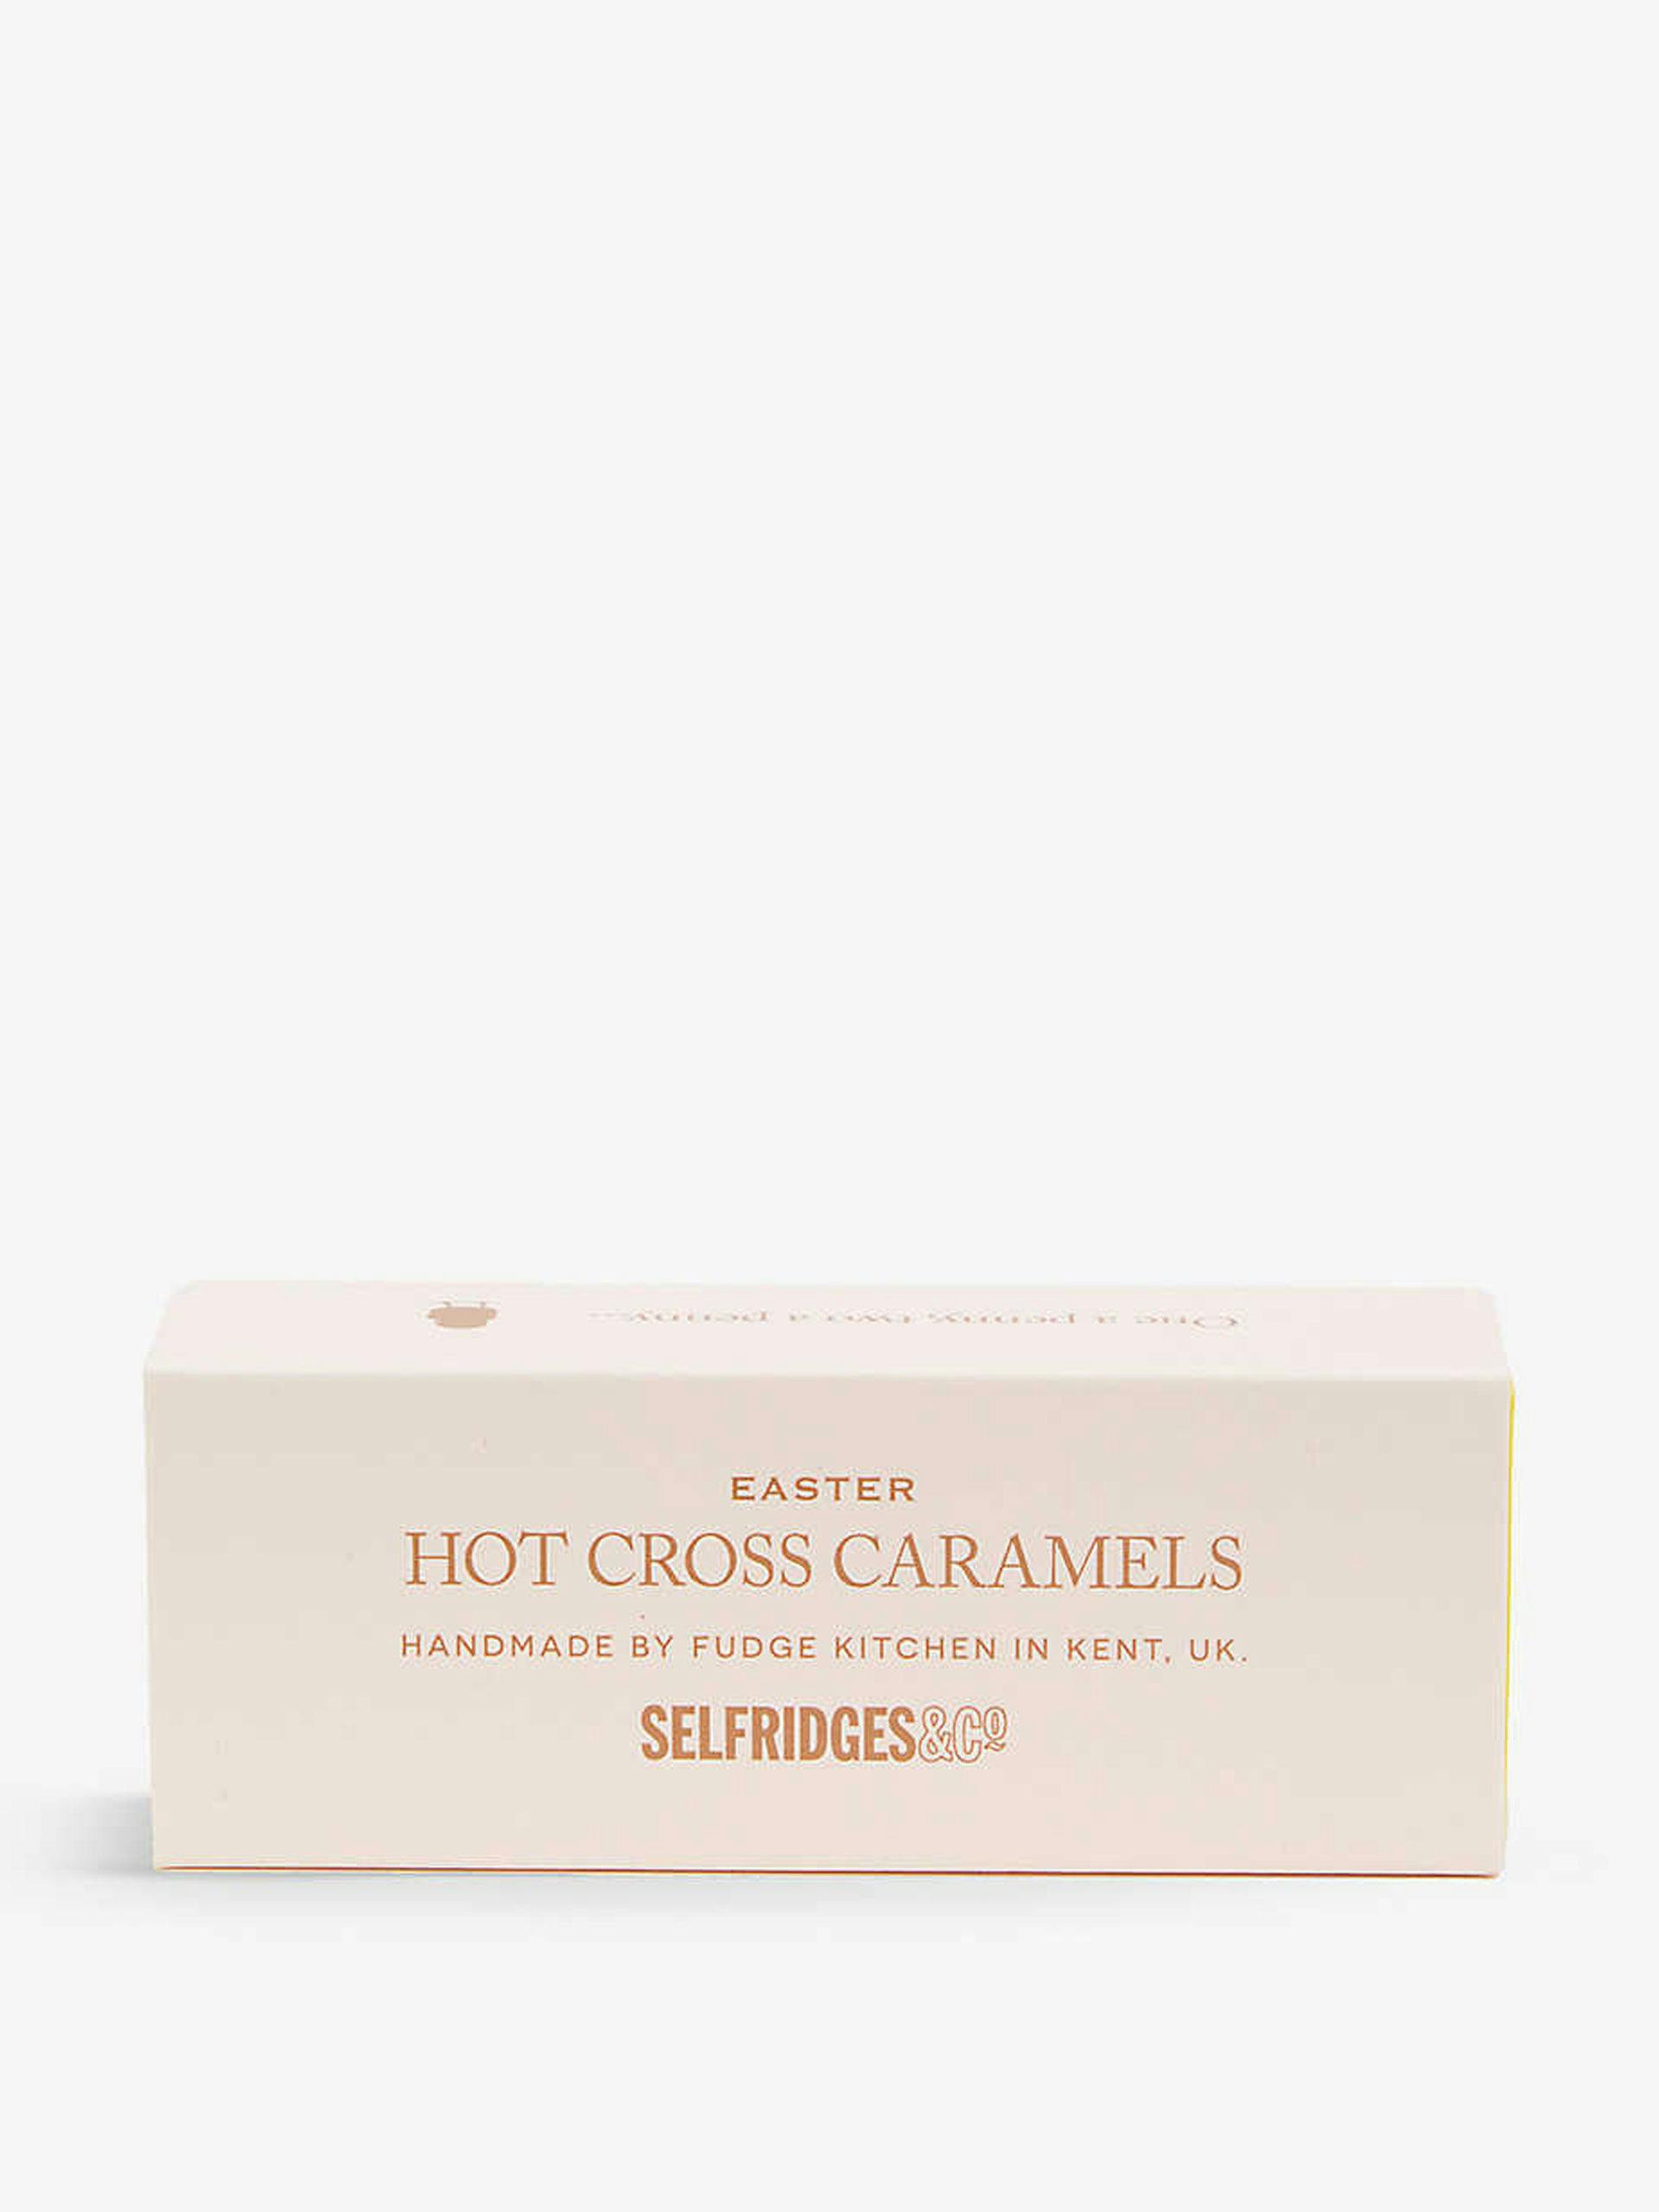 Hot cross caramels